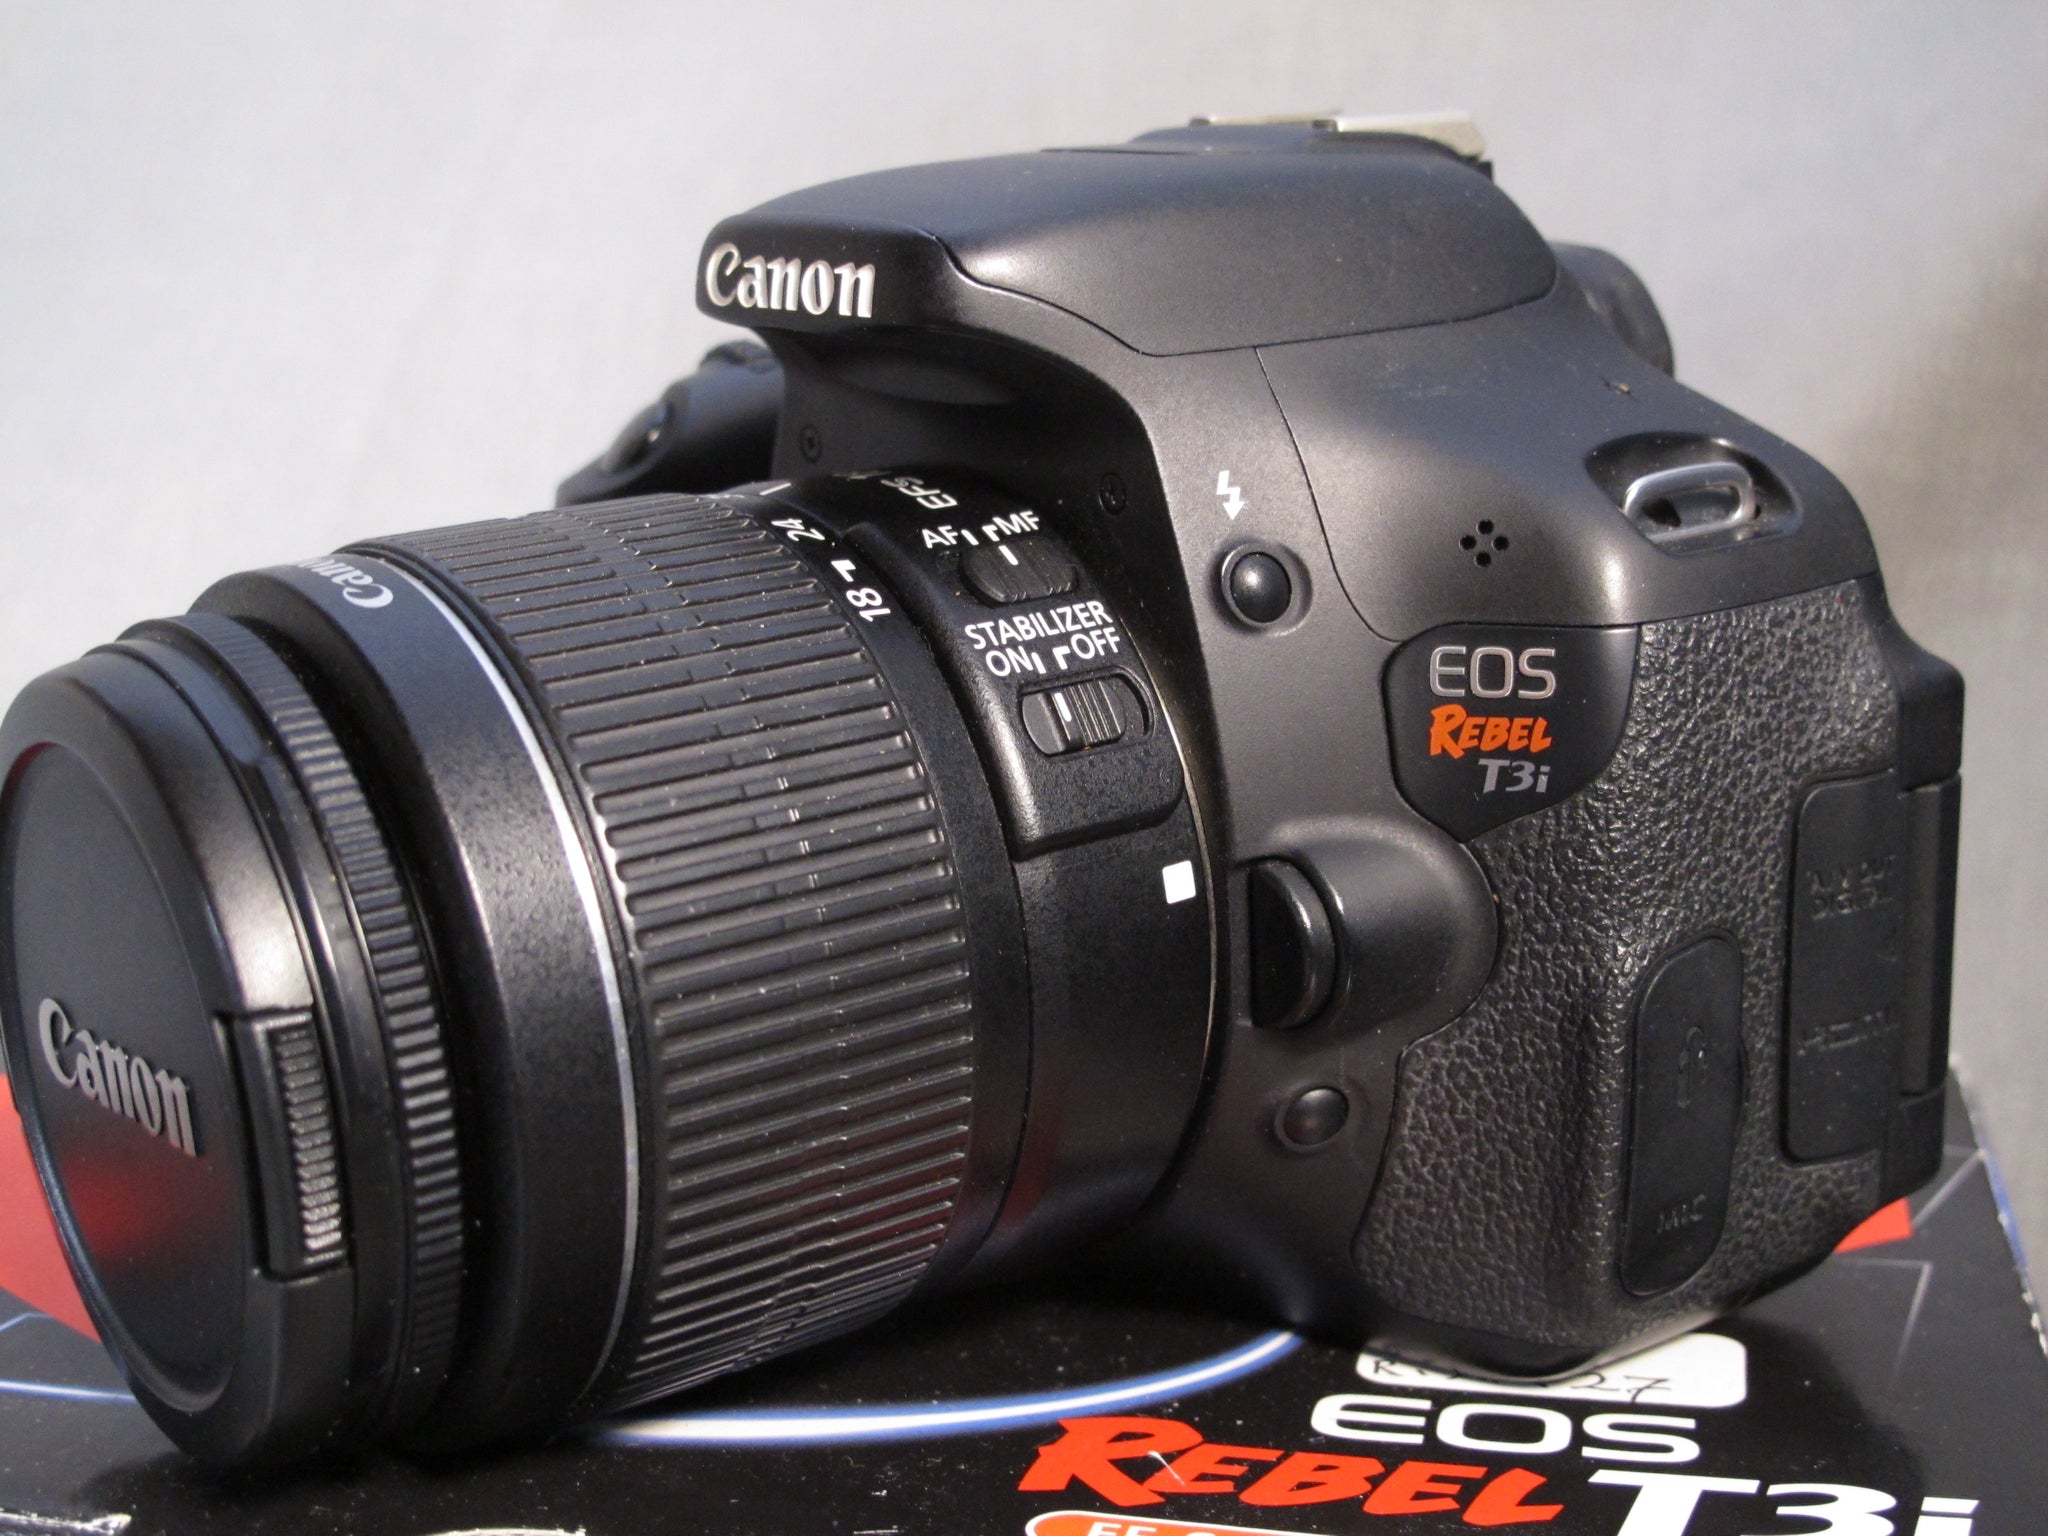 Canon デジタル一眼レフカメラ EOS Kiss X5 レンズキット EF-S18-55mm F3.5-5.6 IS II付属 KISSX5-18 - 3